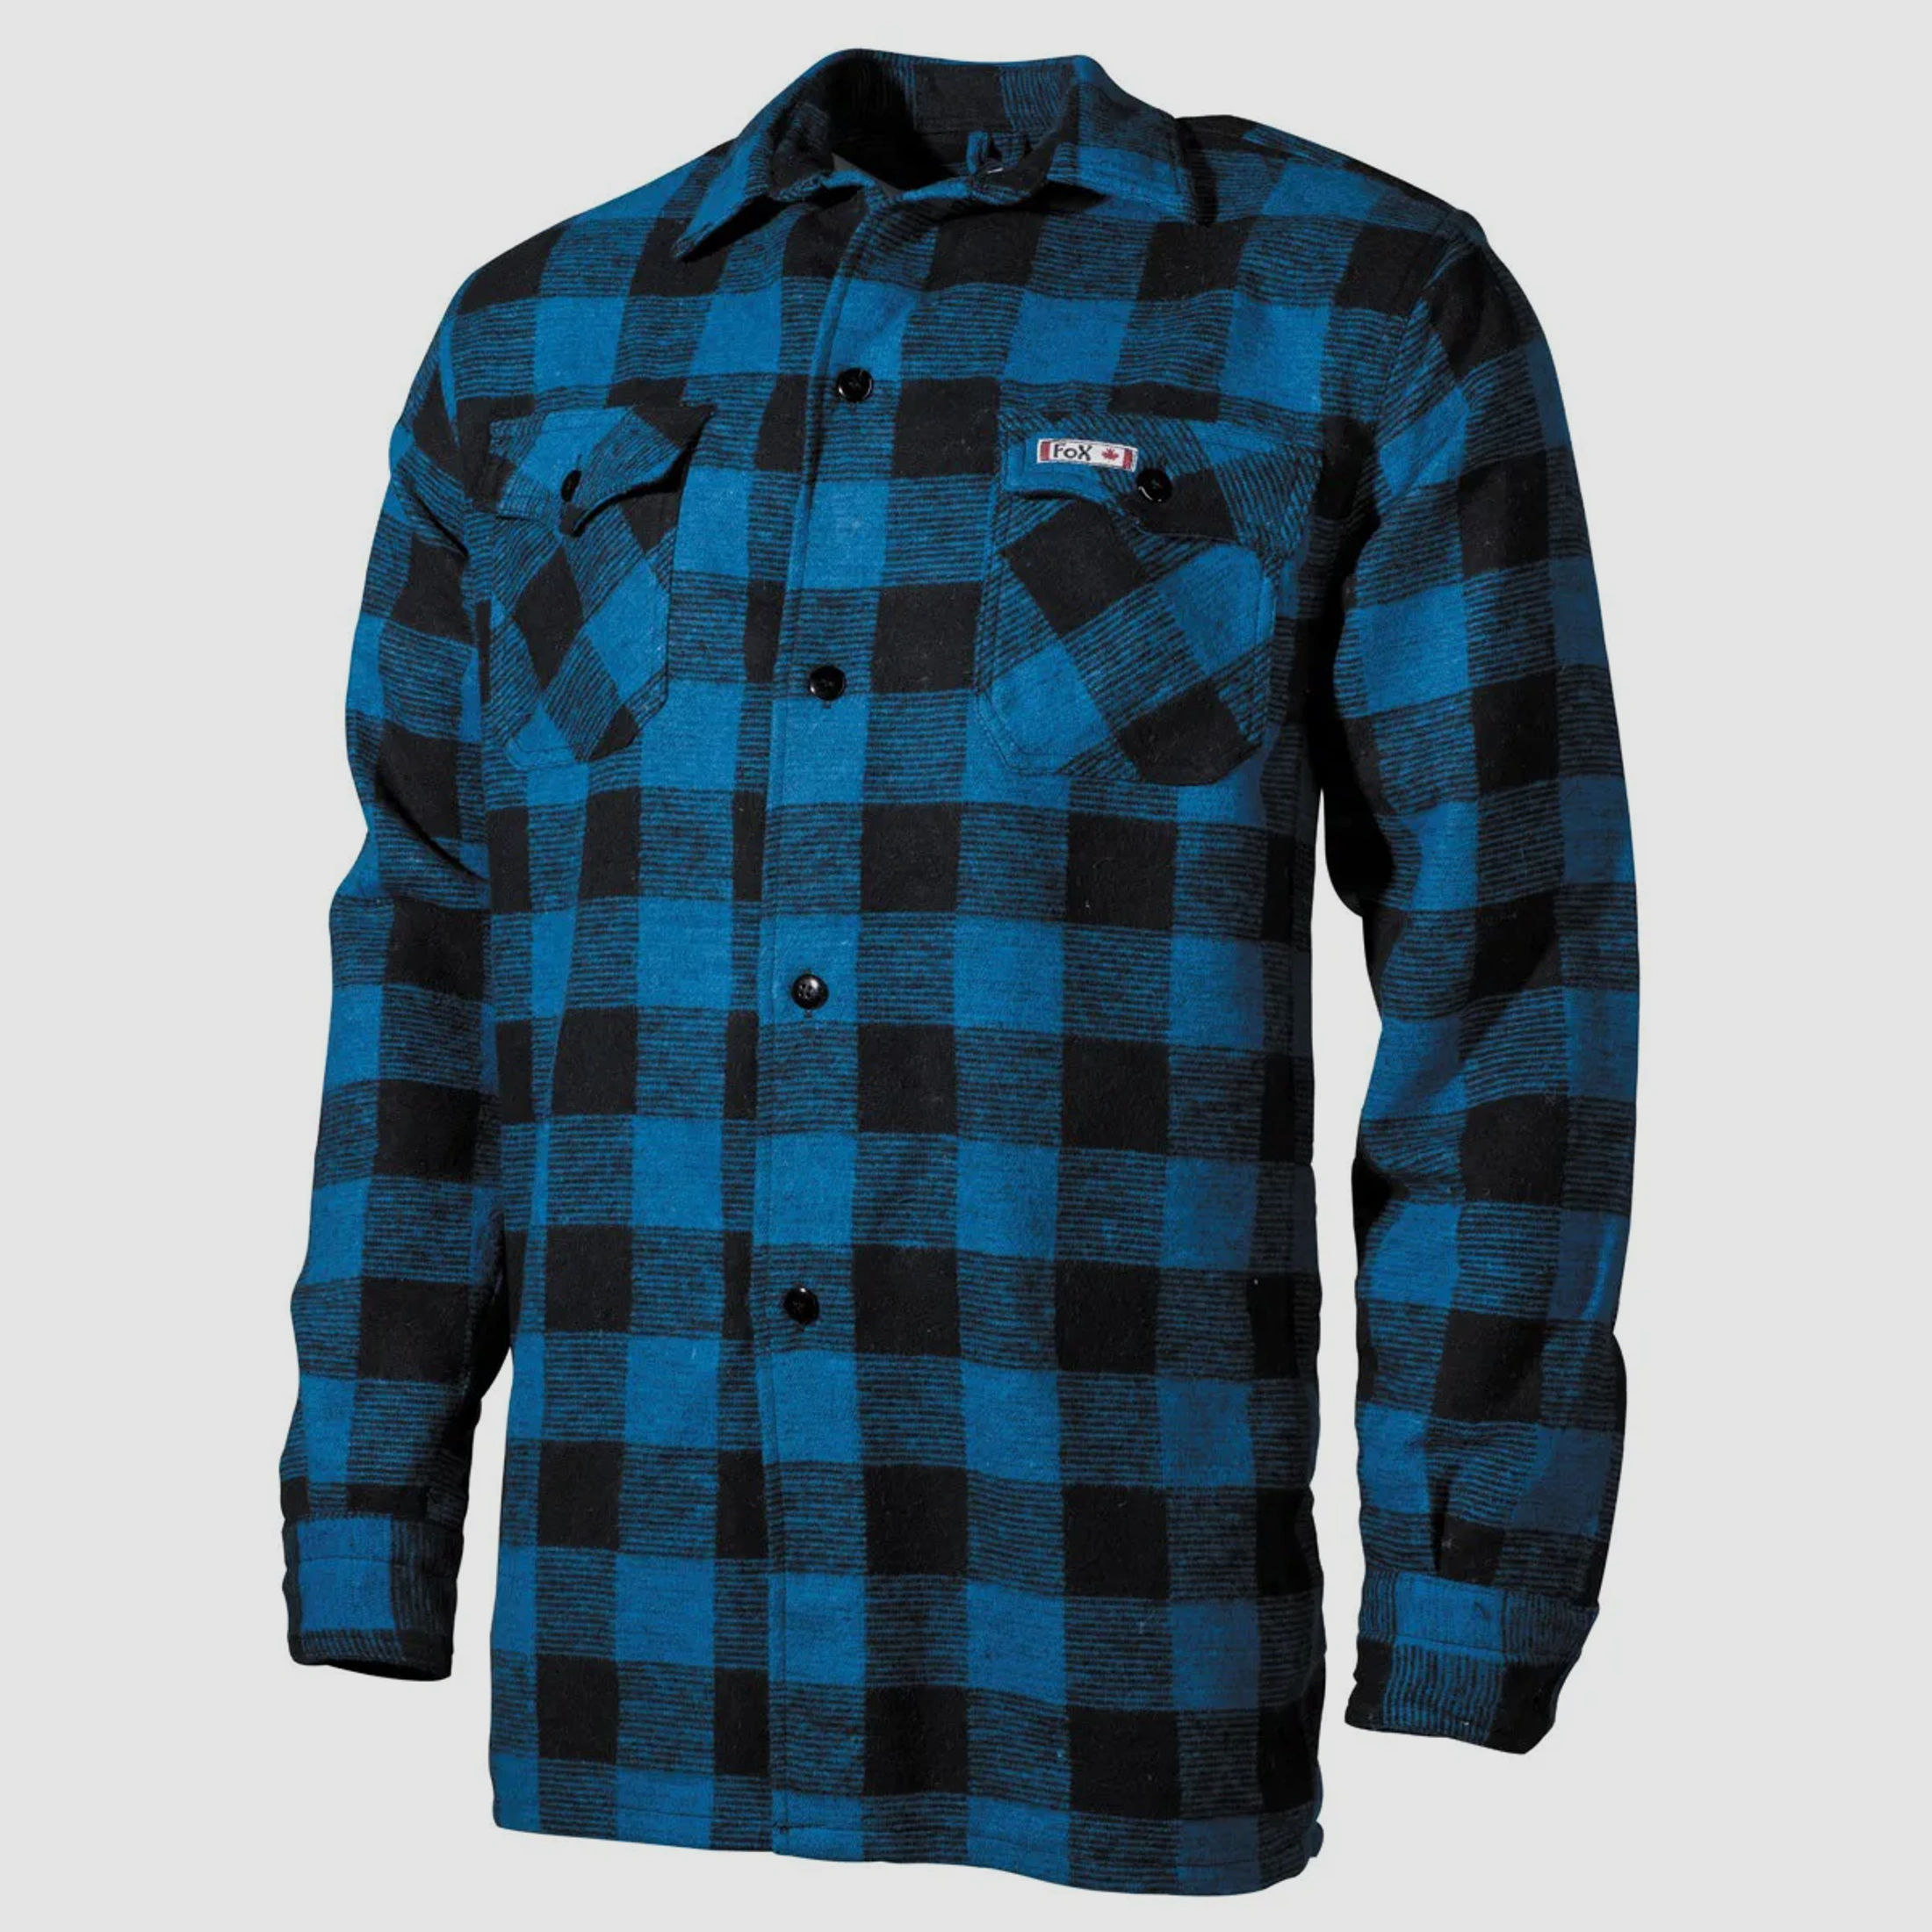 Holzfällerhemd, schwere Qualität, Blau / Schwarz kariert, Größe 3XL